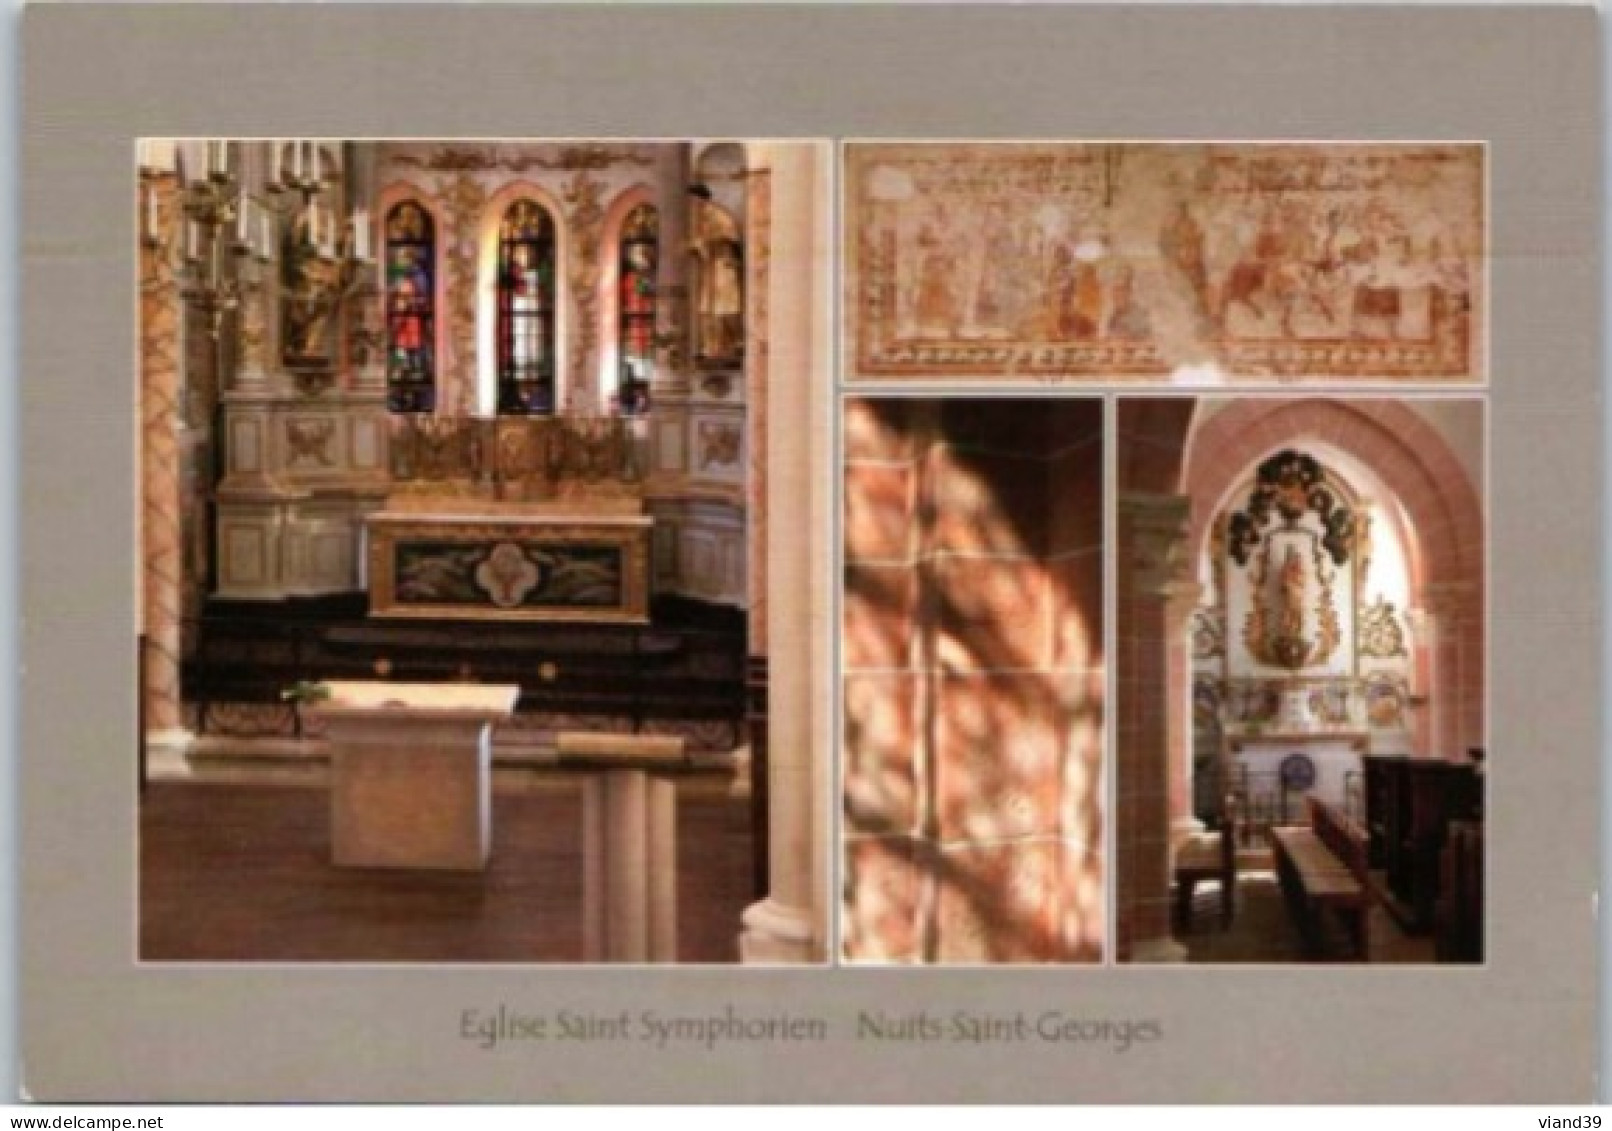 Eglise Saint Symphorien : Choeur Rénove; Peinture Murale, Maitre Autel  Photos Jean Louis Bernuy.     Non Circulée - Nuits Saint Georges